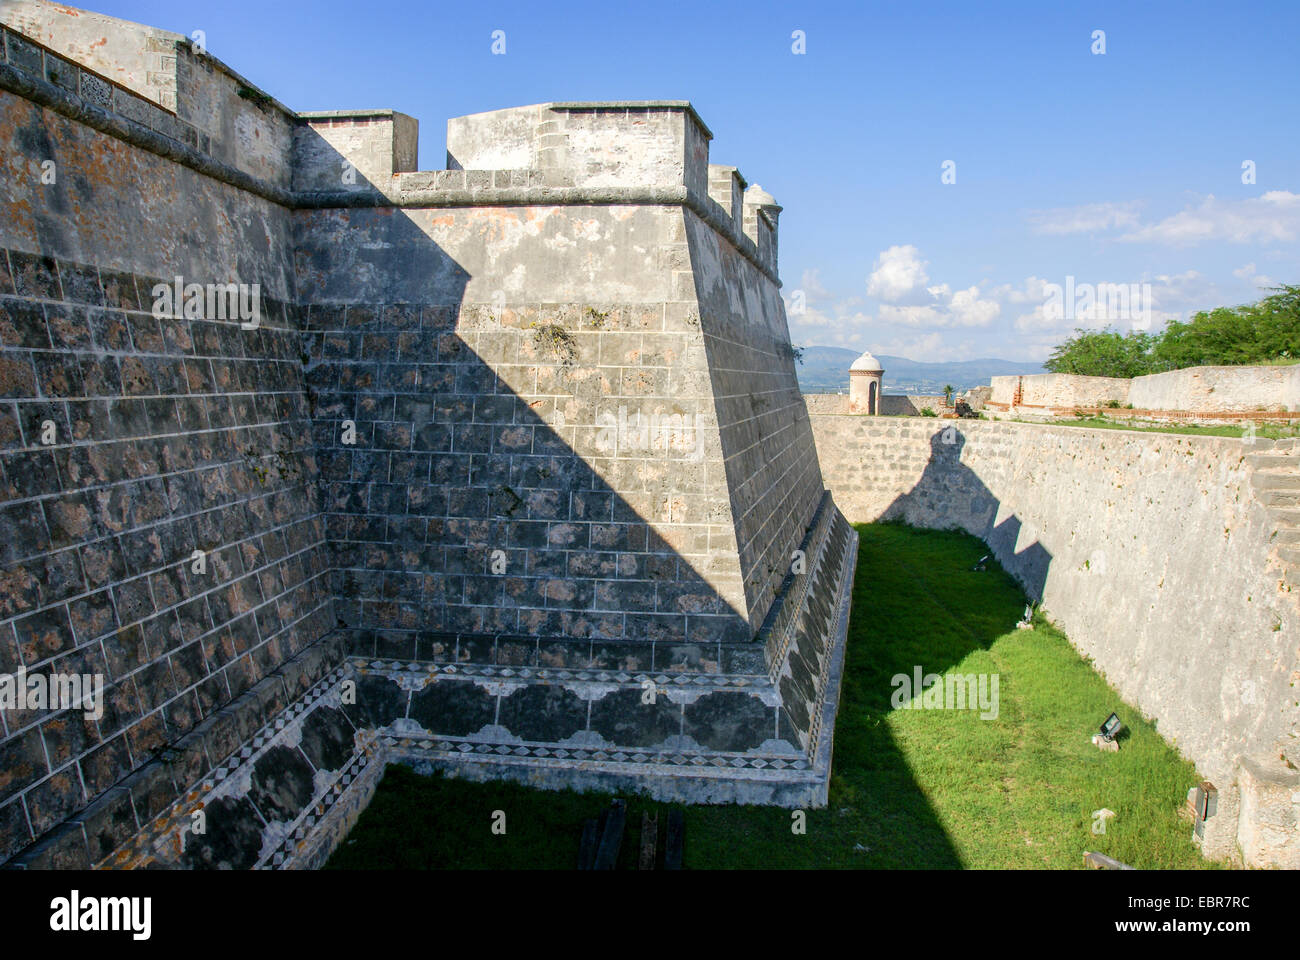 Castillo de San Pedro del Morro, Santiago de Cuba, Cuba Stock Photo